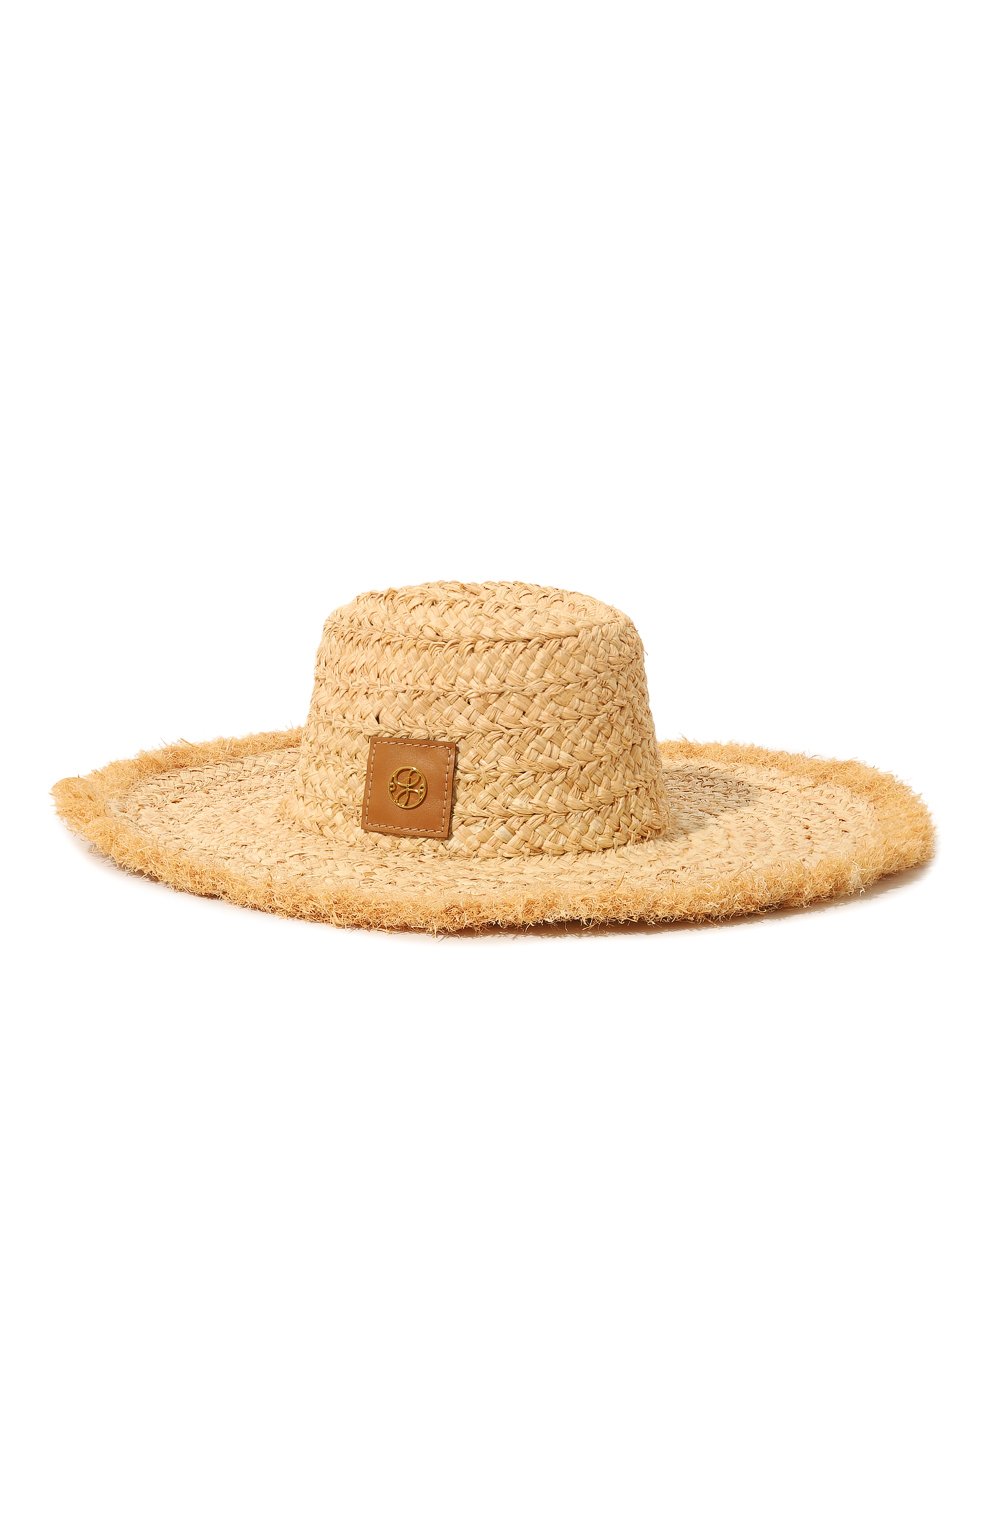 Шляпа Anemone LÉAH